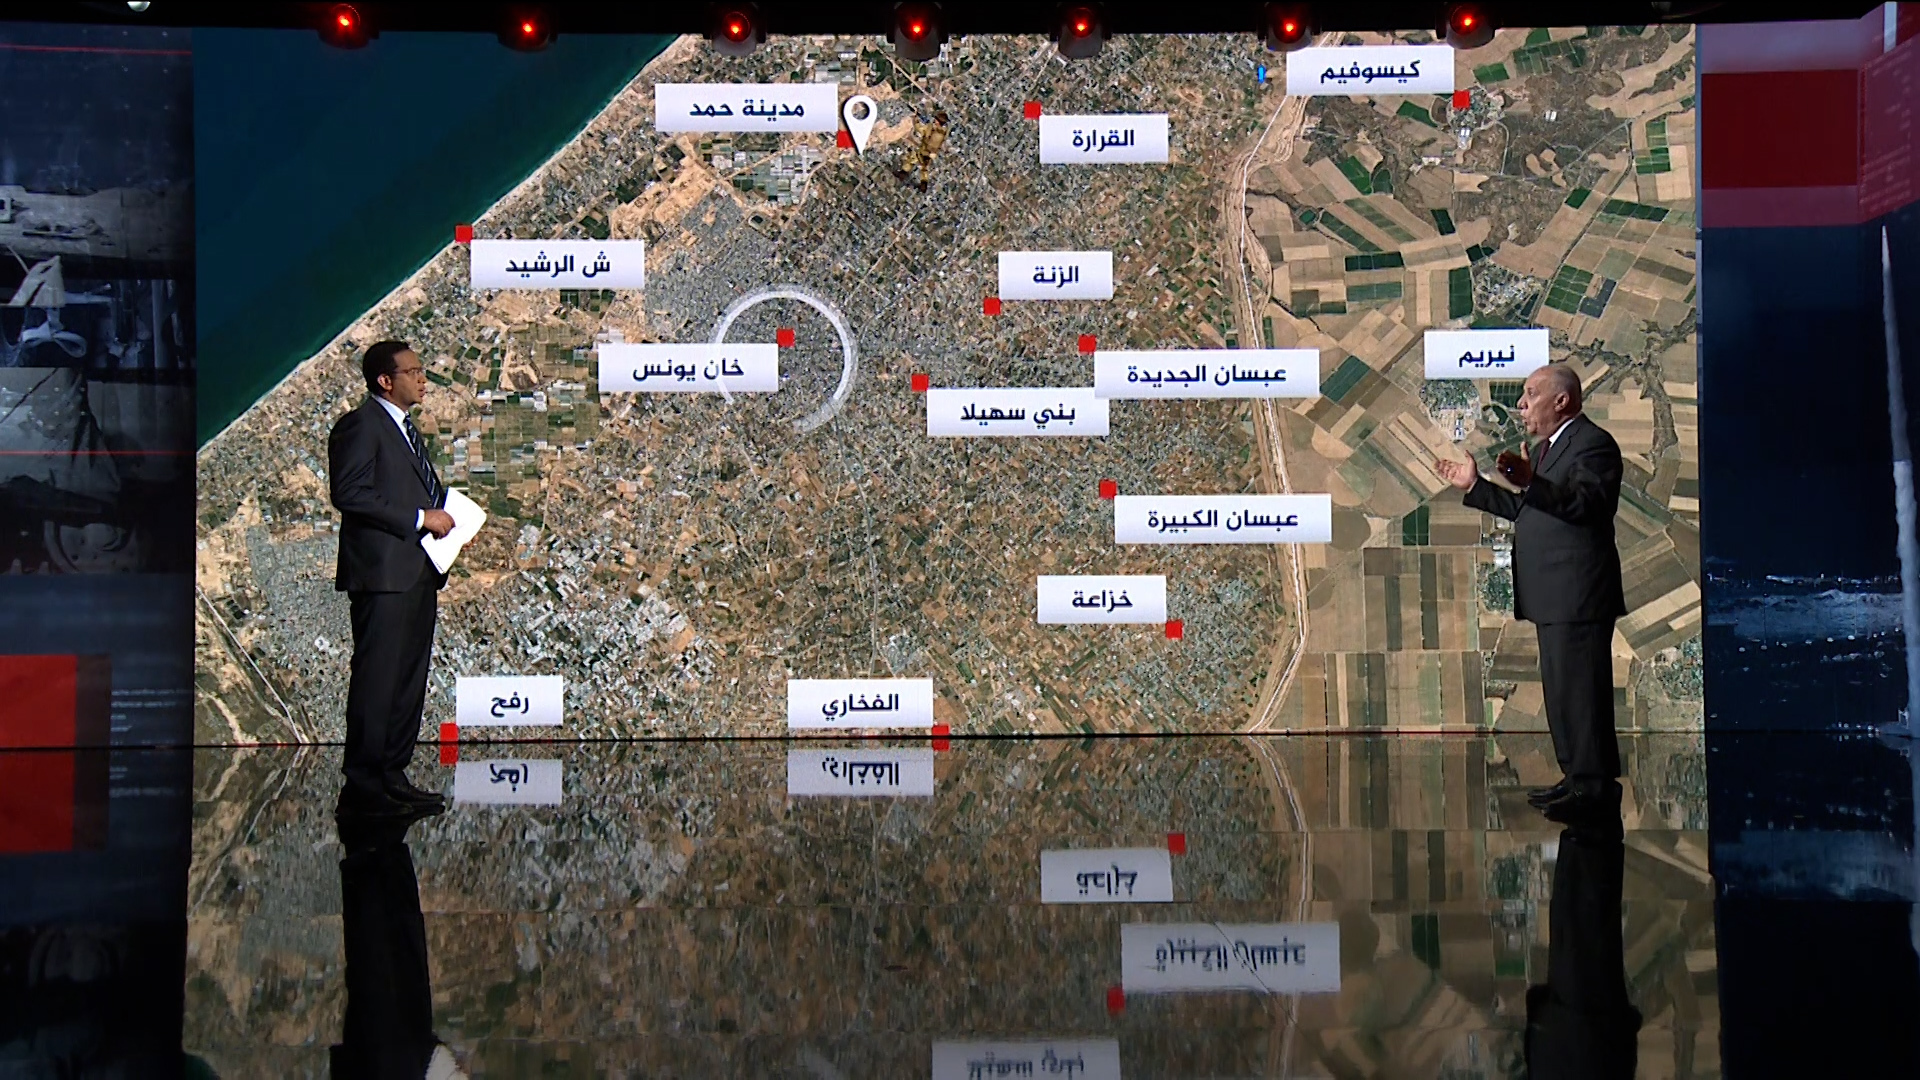 الدويري: غزة تشهد معارك وليس قتالا وإسرائيل تضع خططها يوما بيوم | أخبار – البوكس نيوز